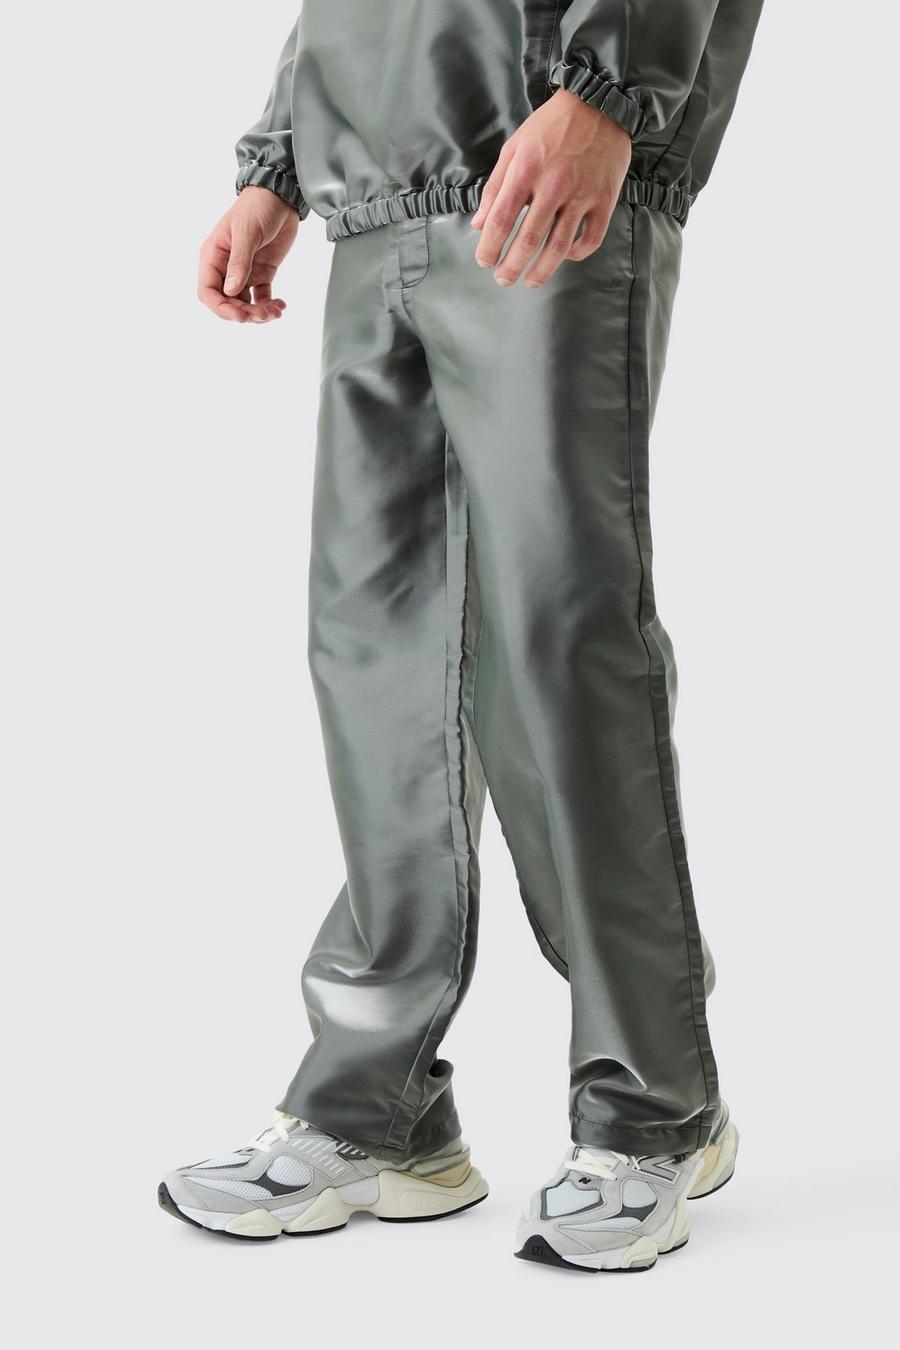 Pantaloni Cargo in nylon metallizzato liquido, Silver